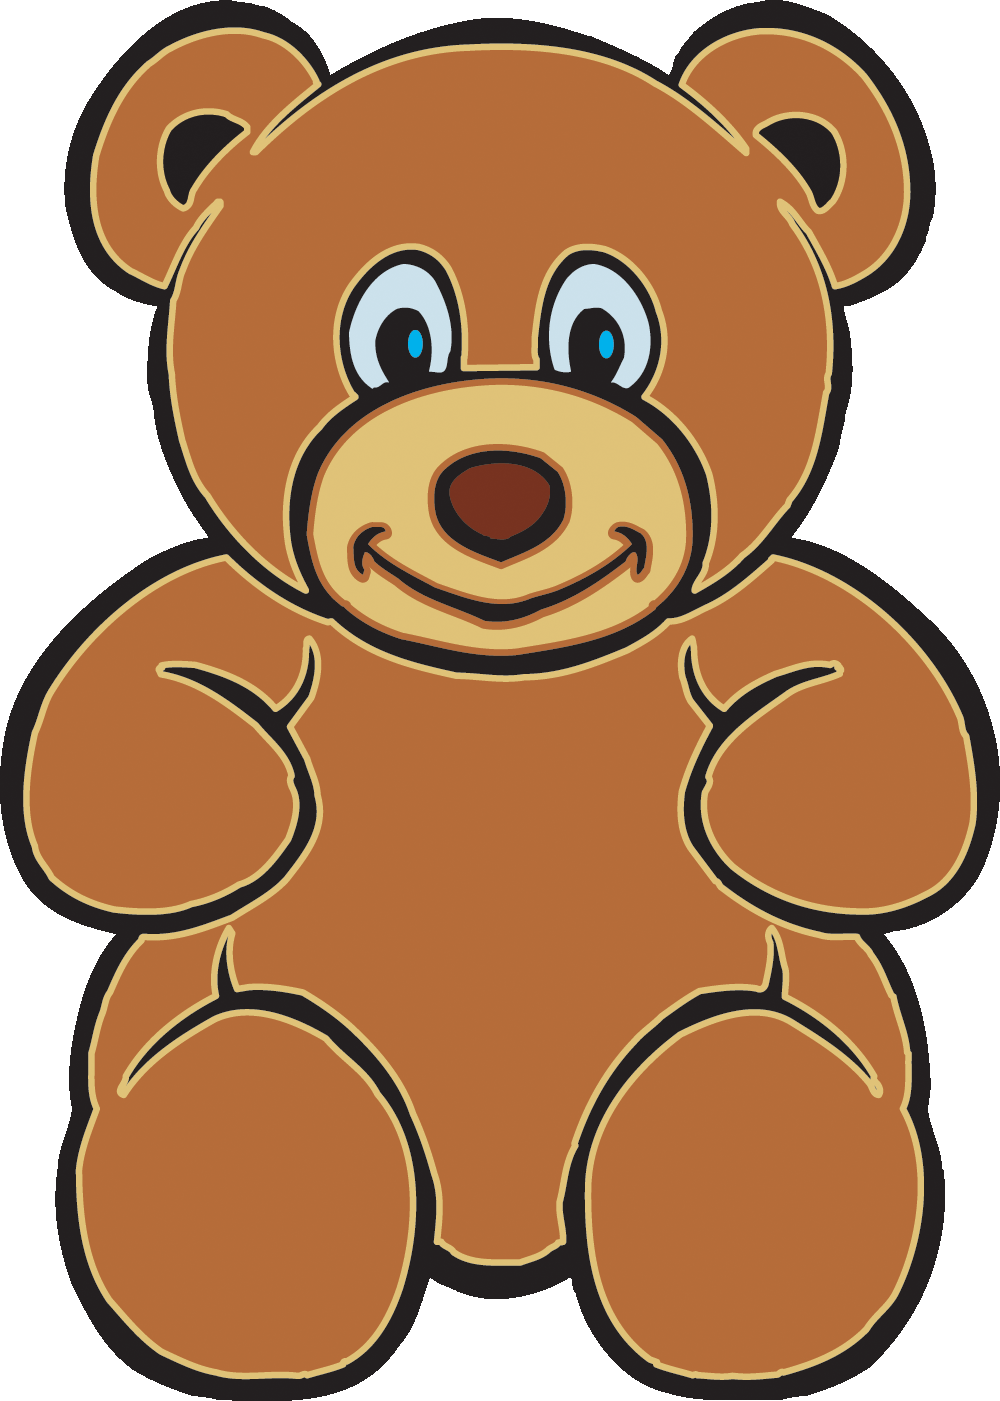 teddy bear clip art images - photo #6